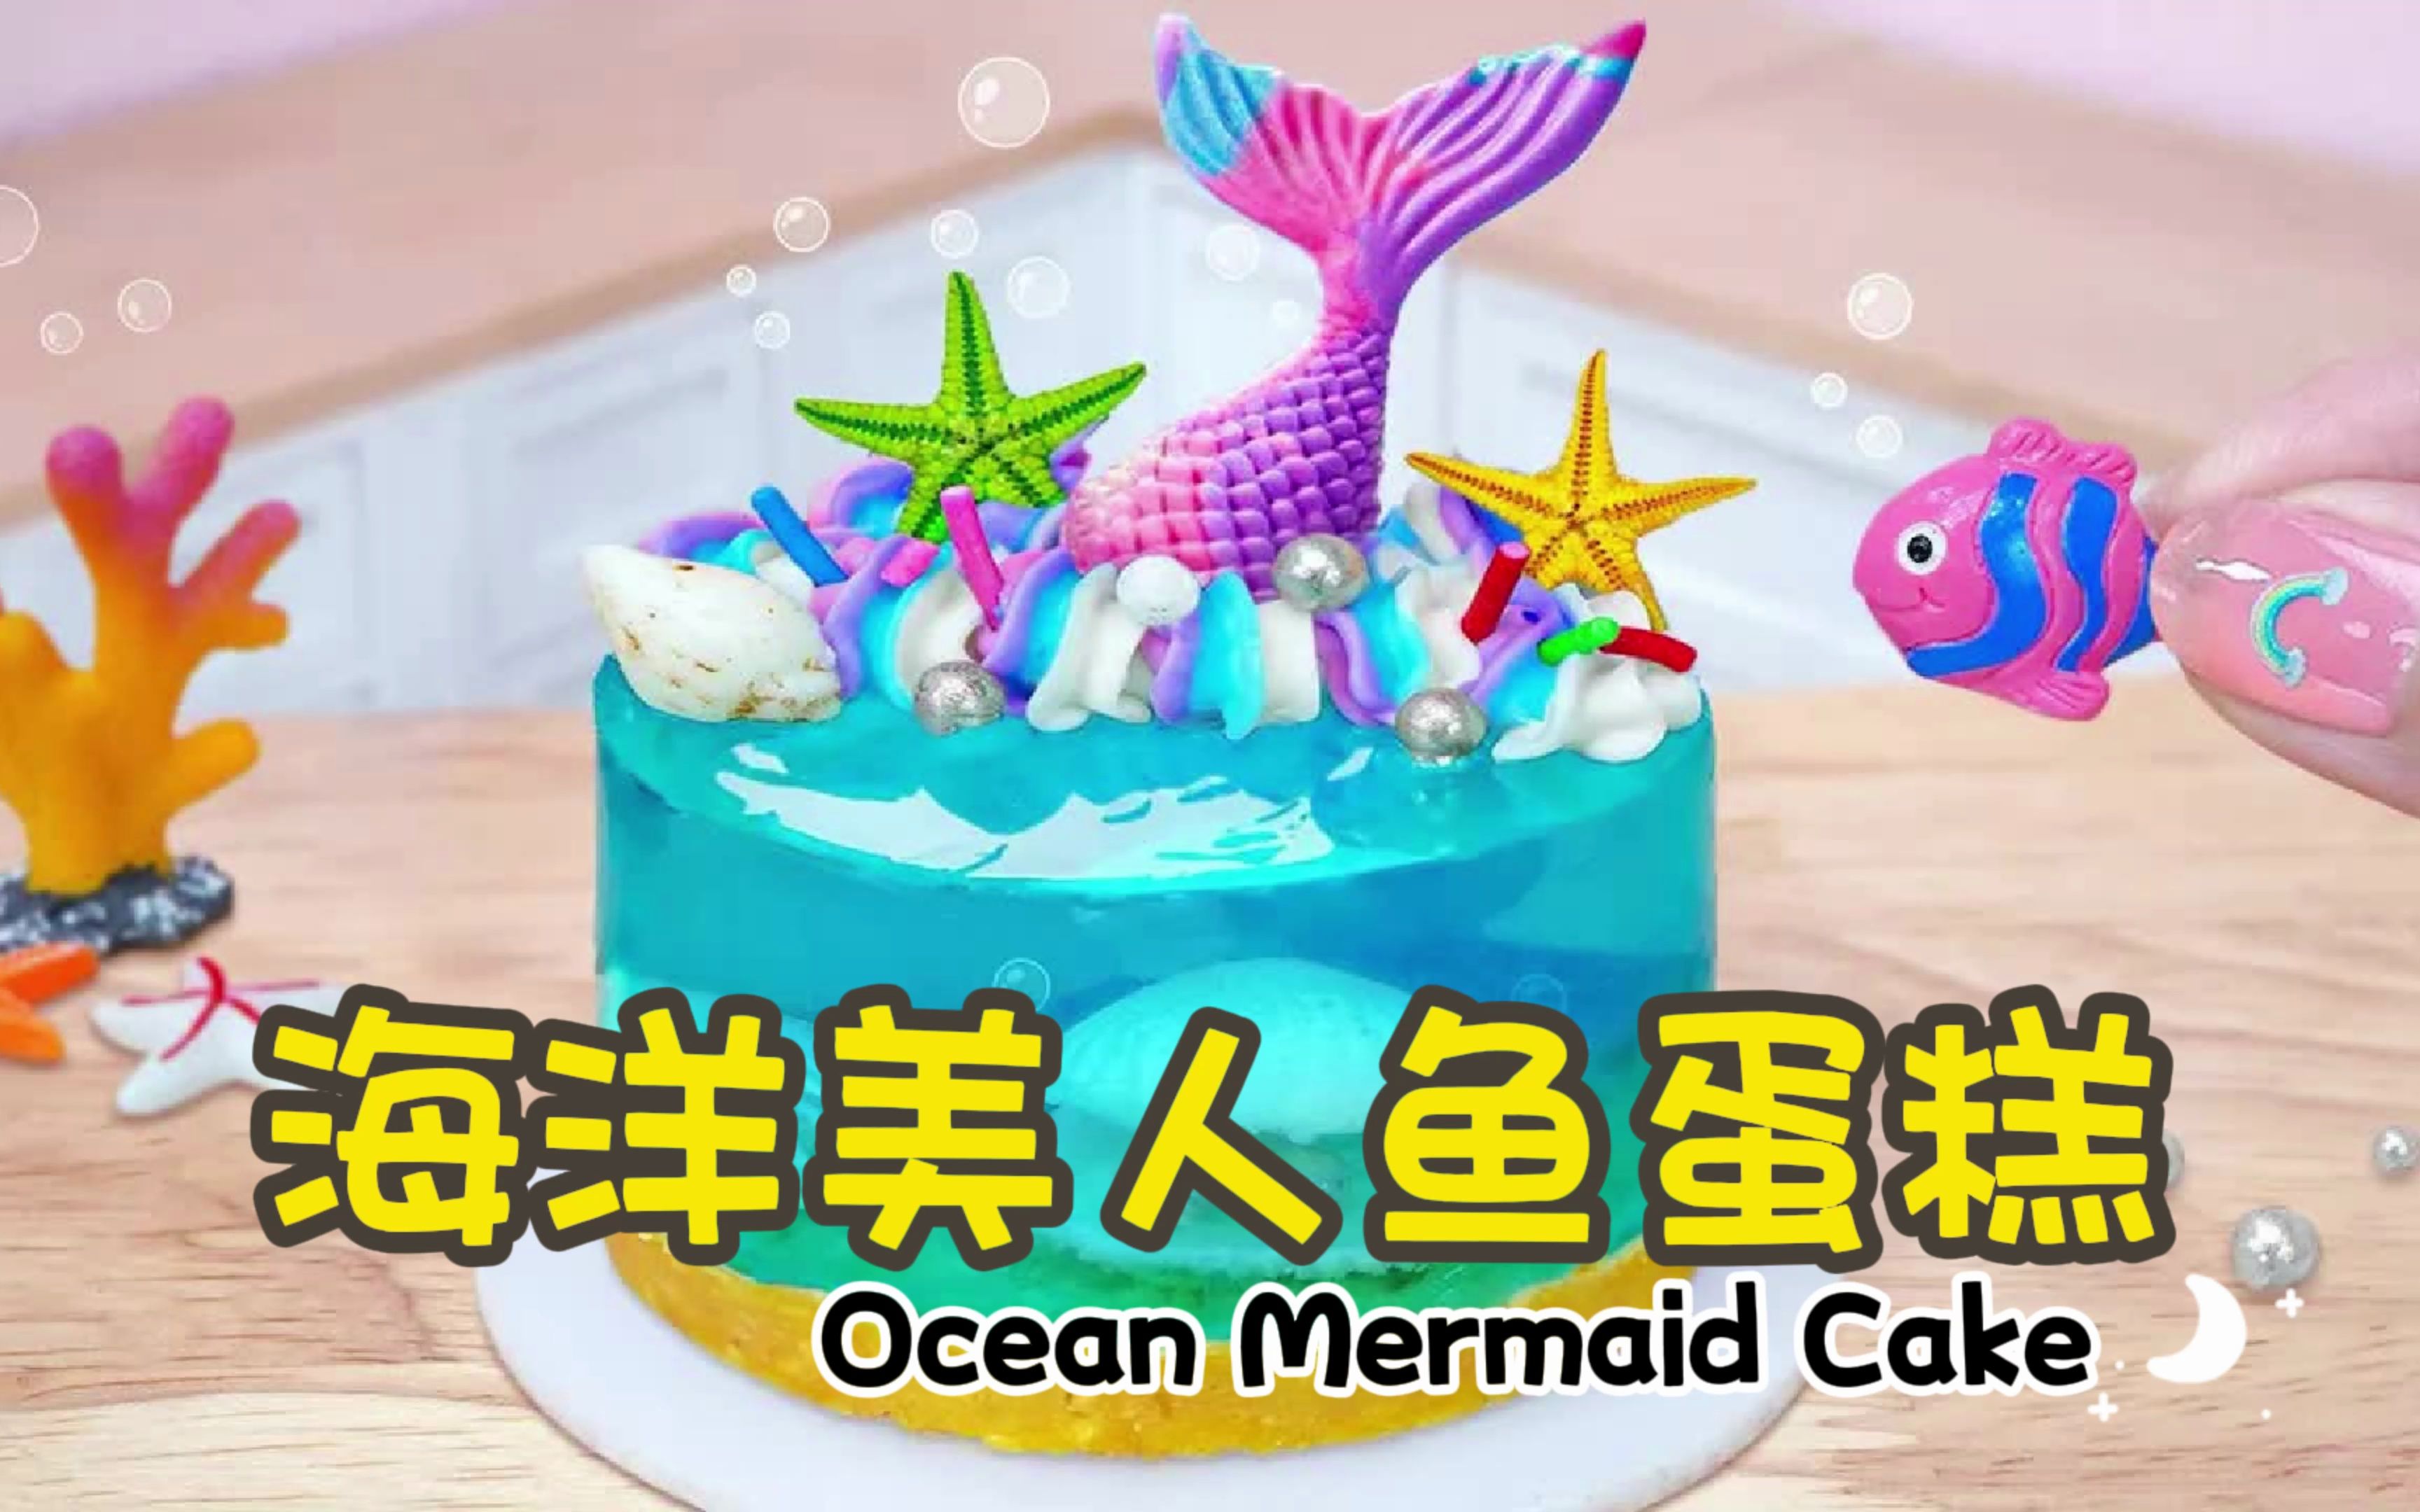 美人鱼生日蛋糕 库存图片. 图片 包括有 甜甜, 结霜, 蓝色, 水下, 当事人, 海洋, 华丽, 蛋糕 - 160356189